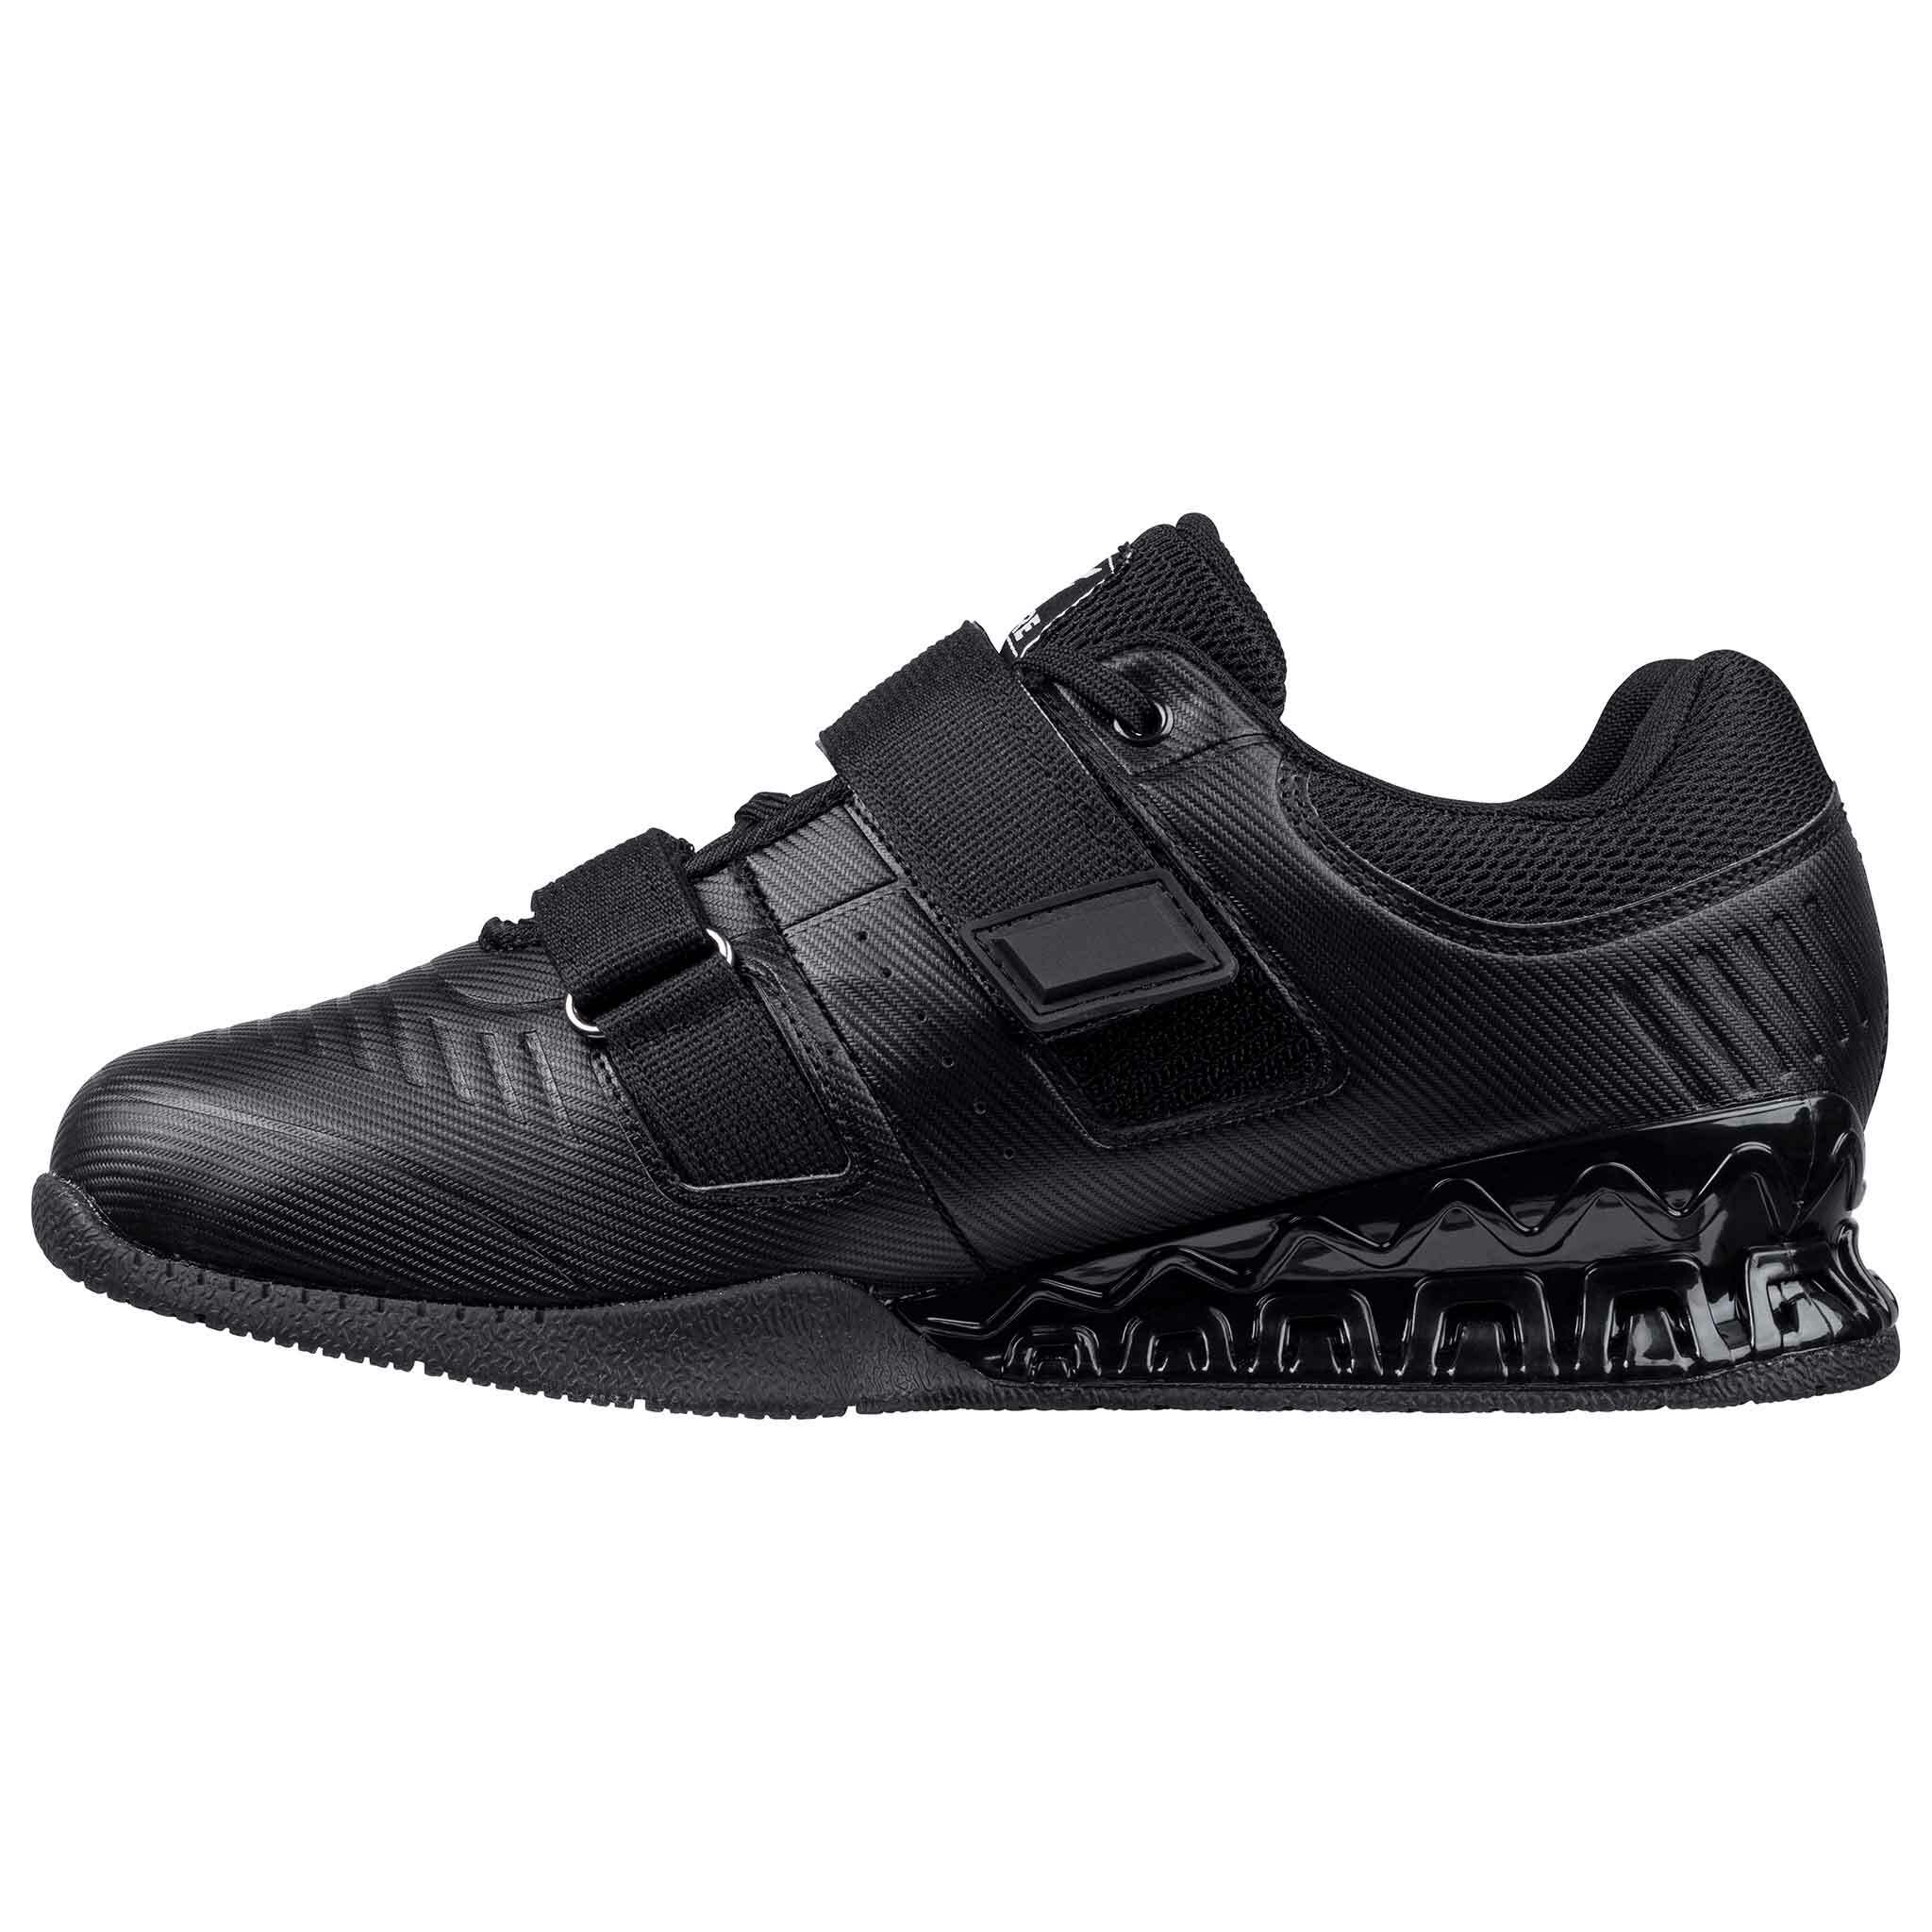 Core Chaussures Haltérophilie Force Noir - 99,90 EUR - Nordic ProStore